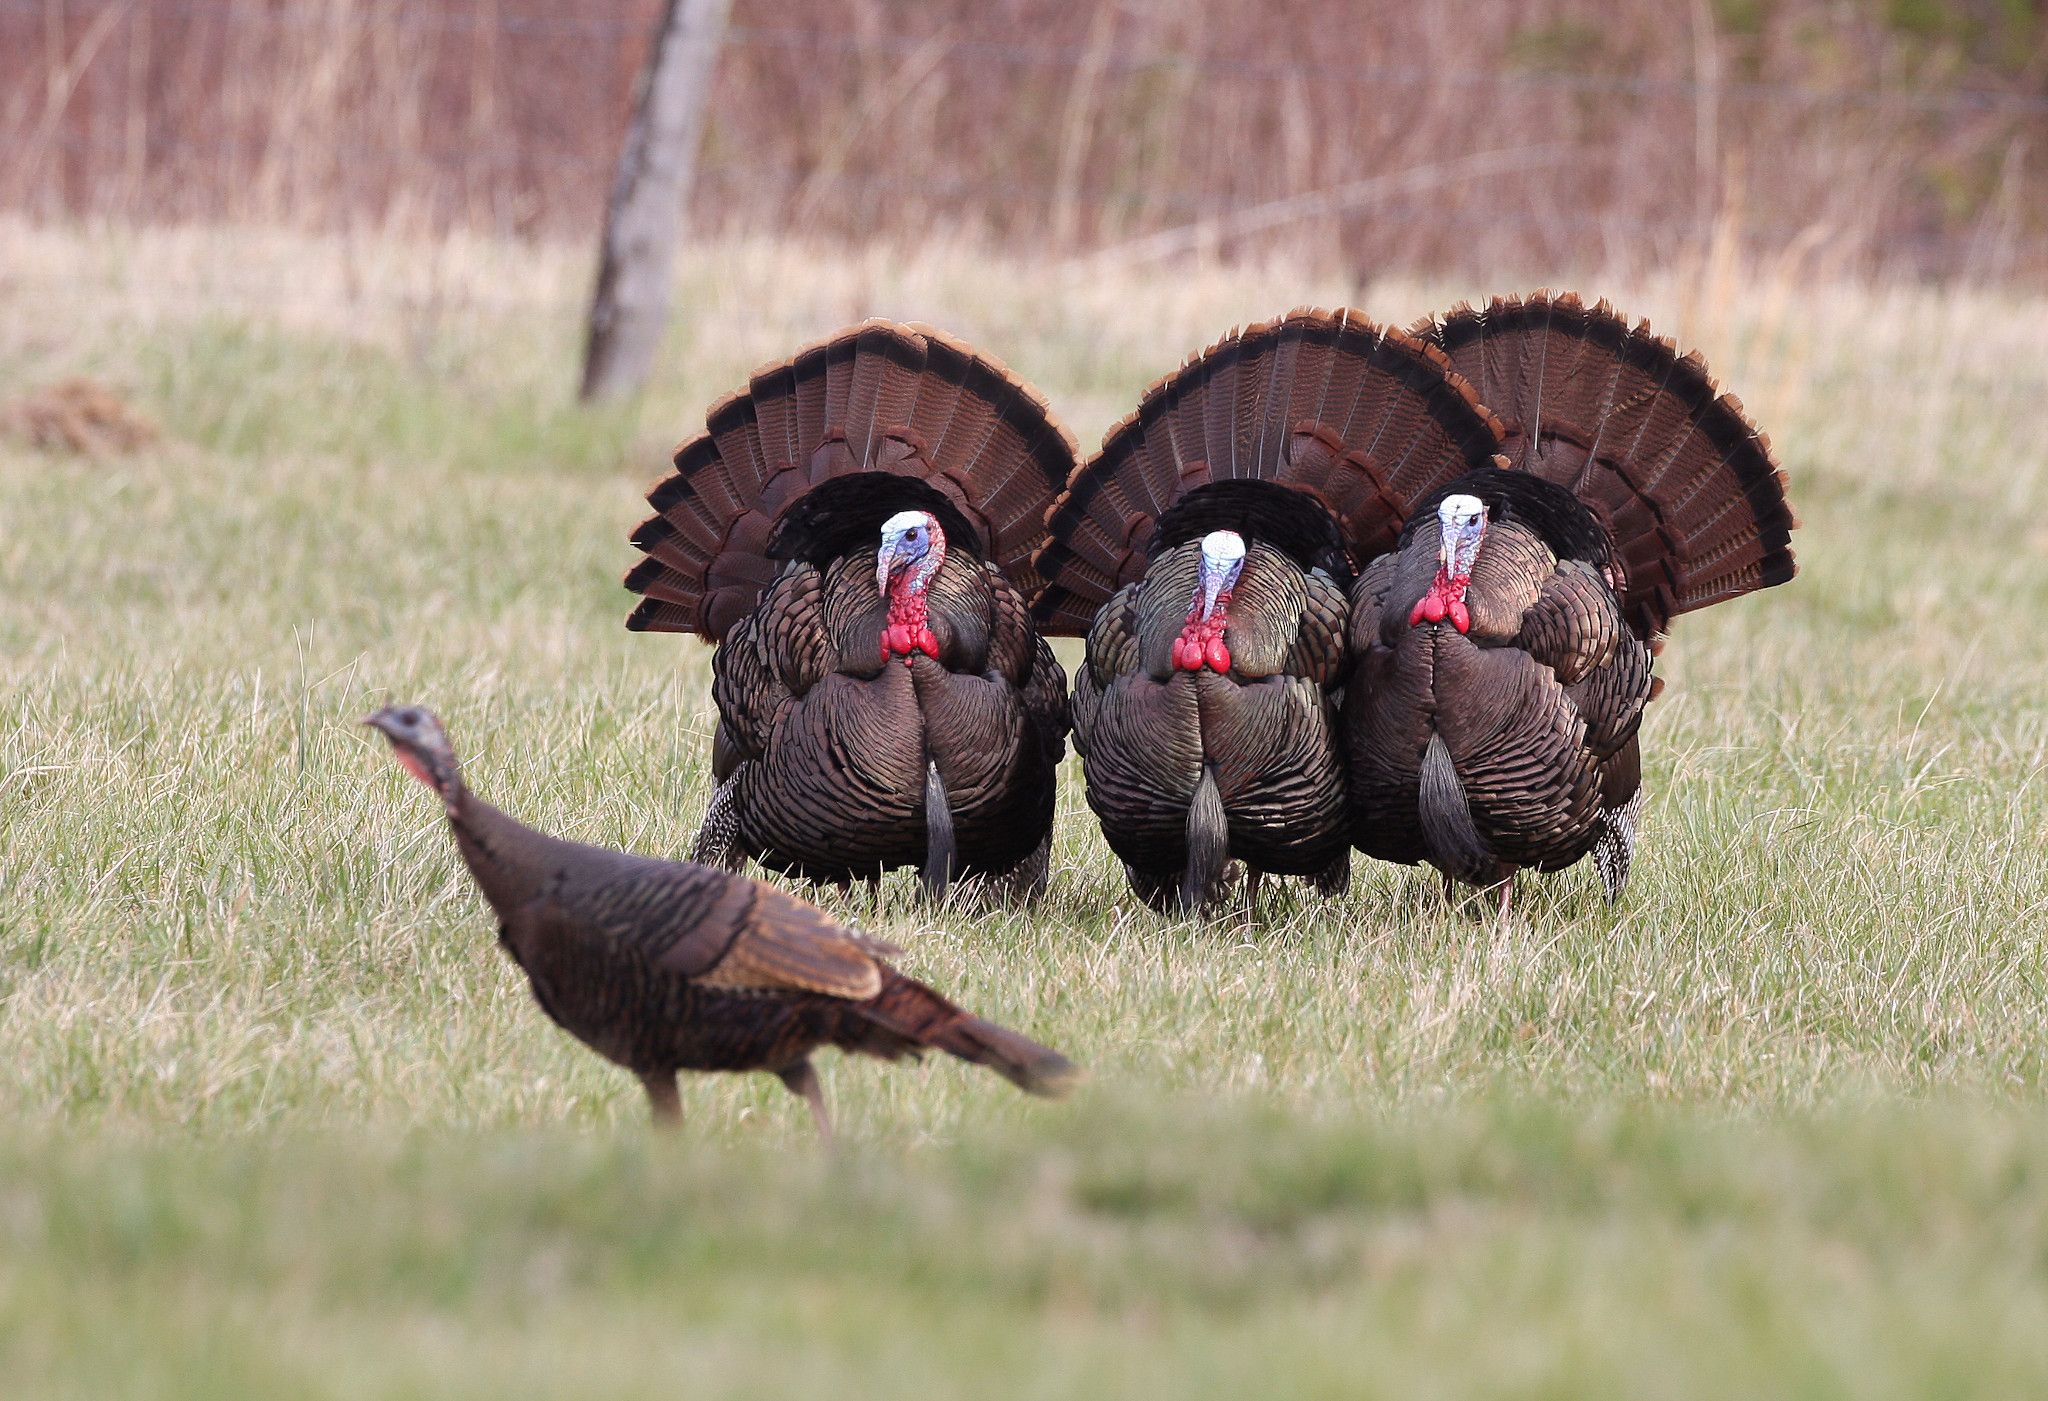 An image of turkeys in a field. 